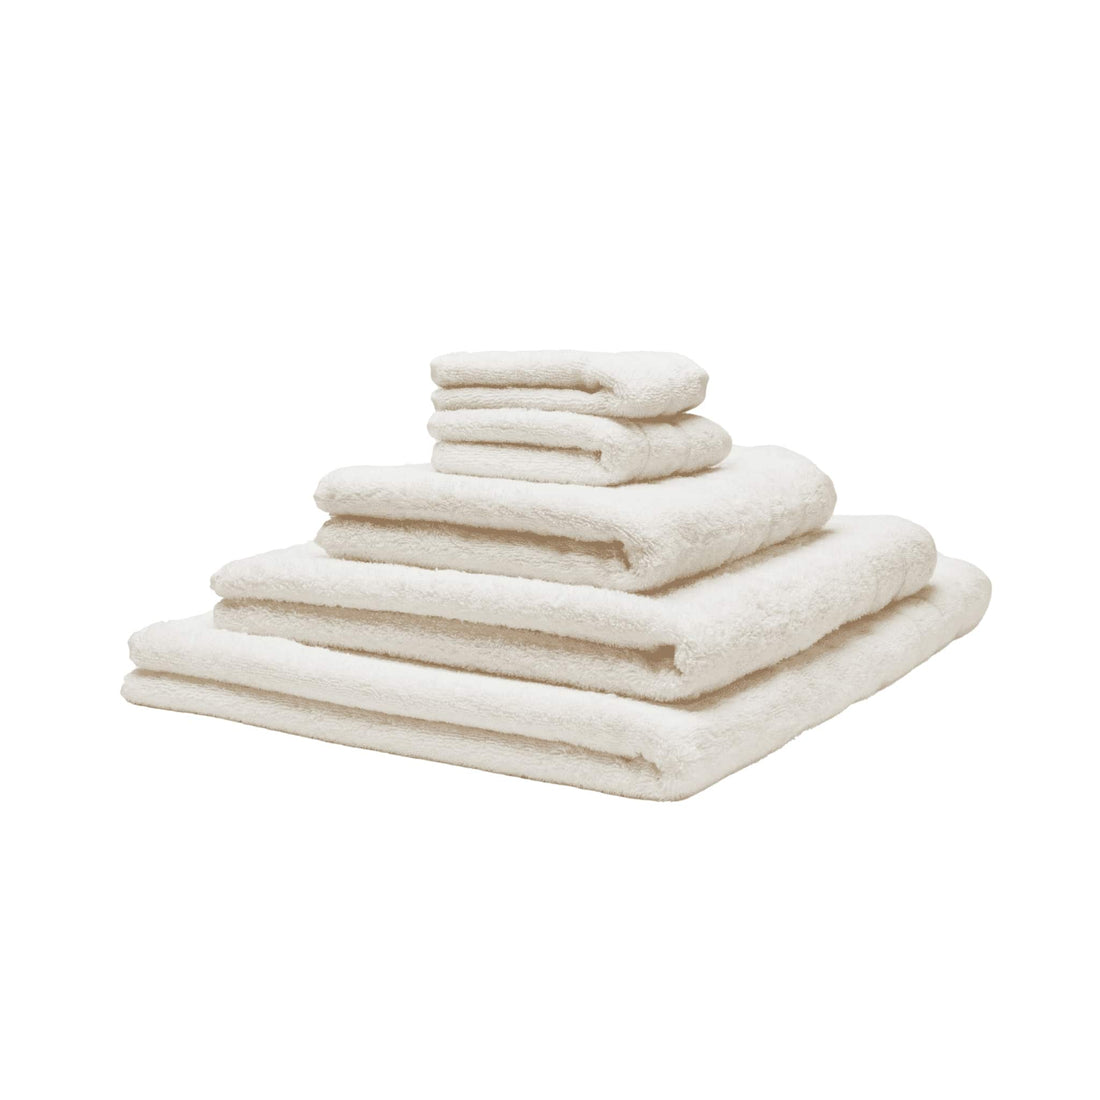 Fem økologiske håndklæder stablet oven på hinanden. Farven er hvid.